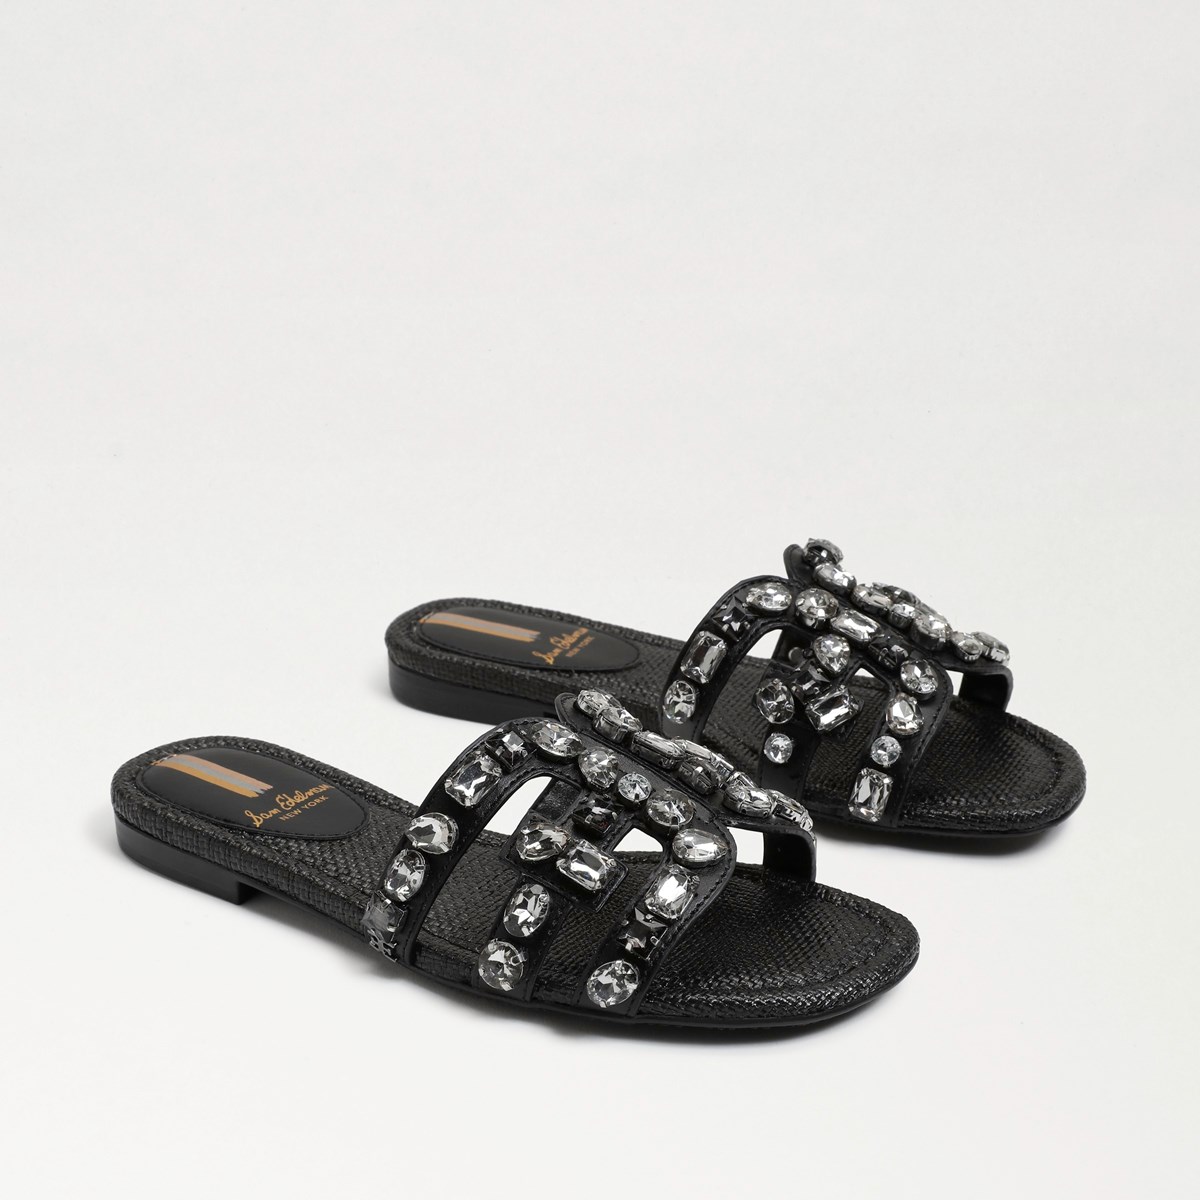 Sam Edelman Bay 16 Slide Sandal | Women's Sandals